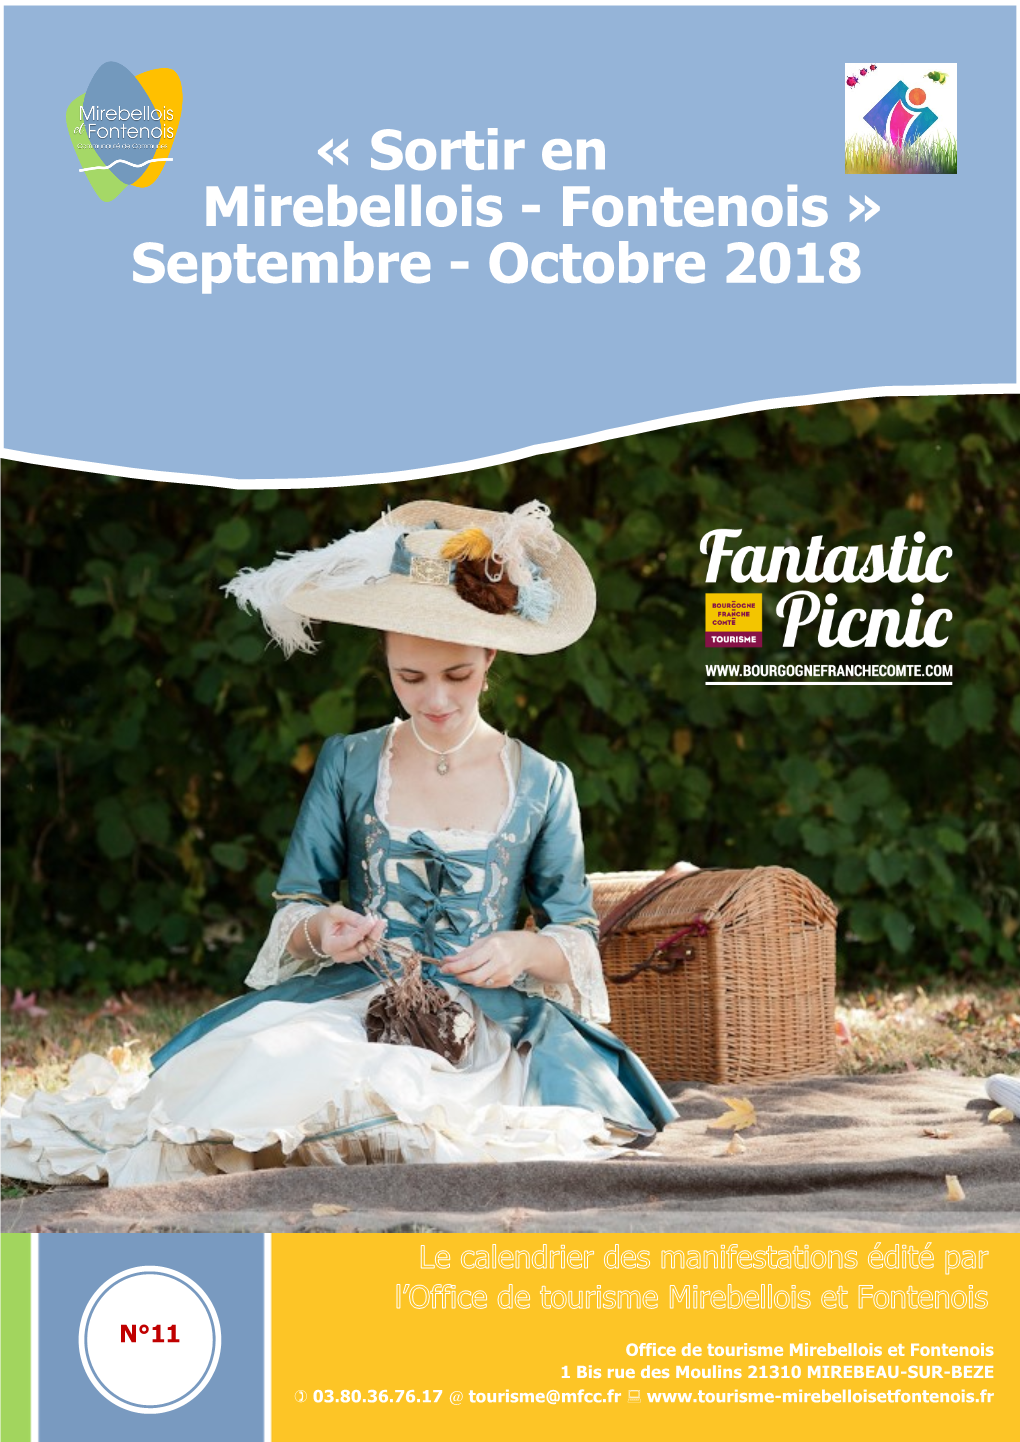 « Sortir En Mirebellois - Fontenois » Septembre - Octobre 2018